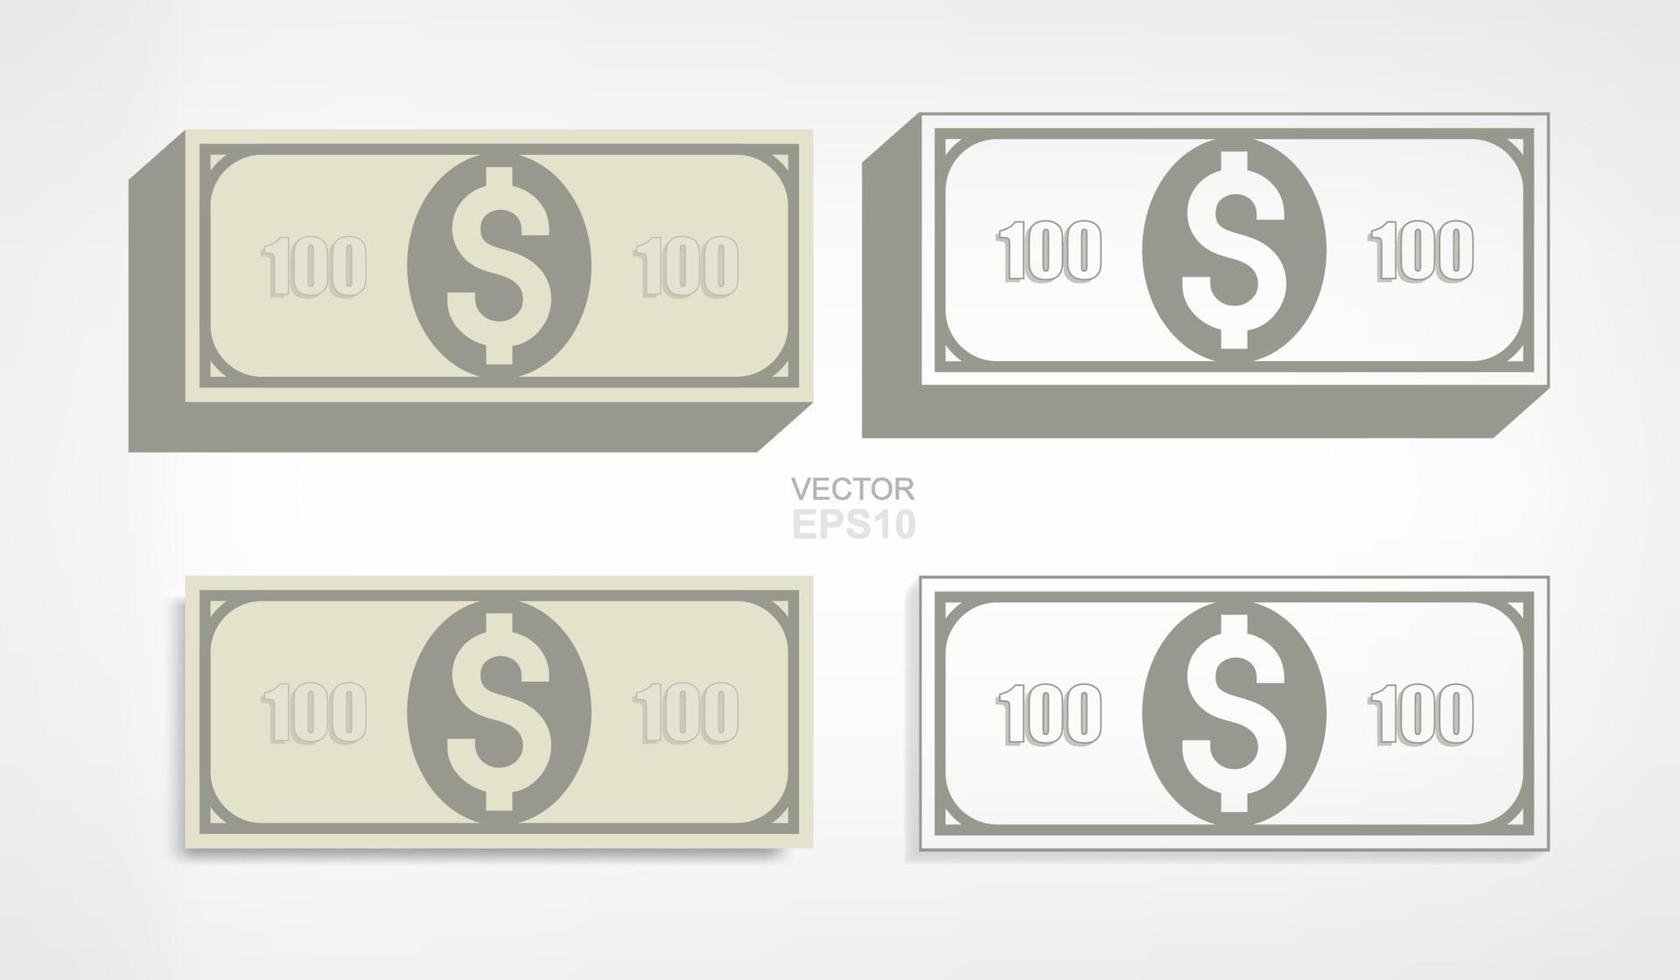 billet de dollar sur fond blanc. vecteur. vecteur